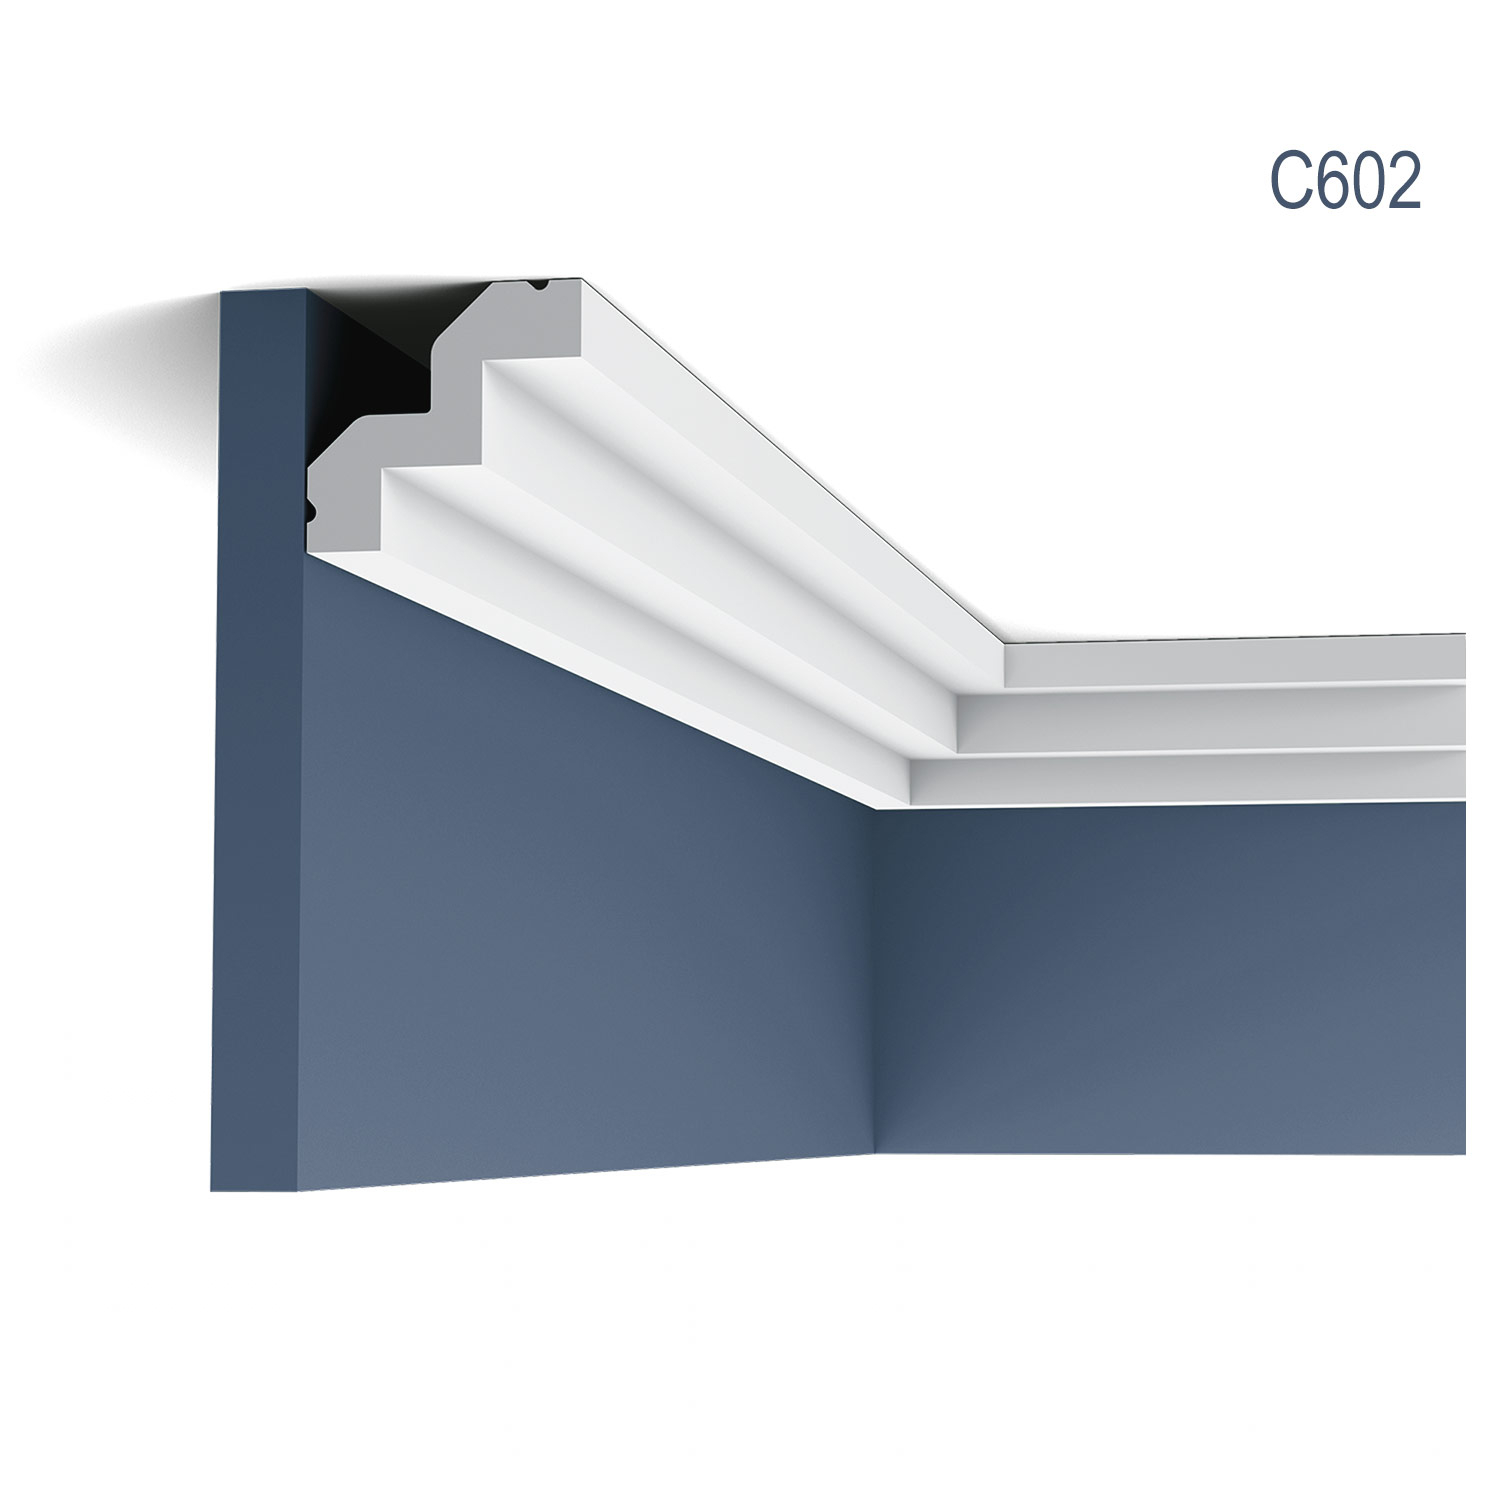 Cornisa C602 pentru tavan, alba, vopsibila, rigida, calitate excelenta, Belgia, din Poliuretan rigid, L 200 x H 5 x L 5,3 cm